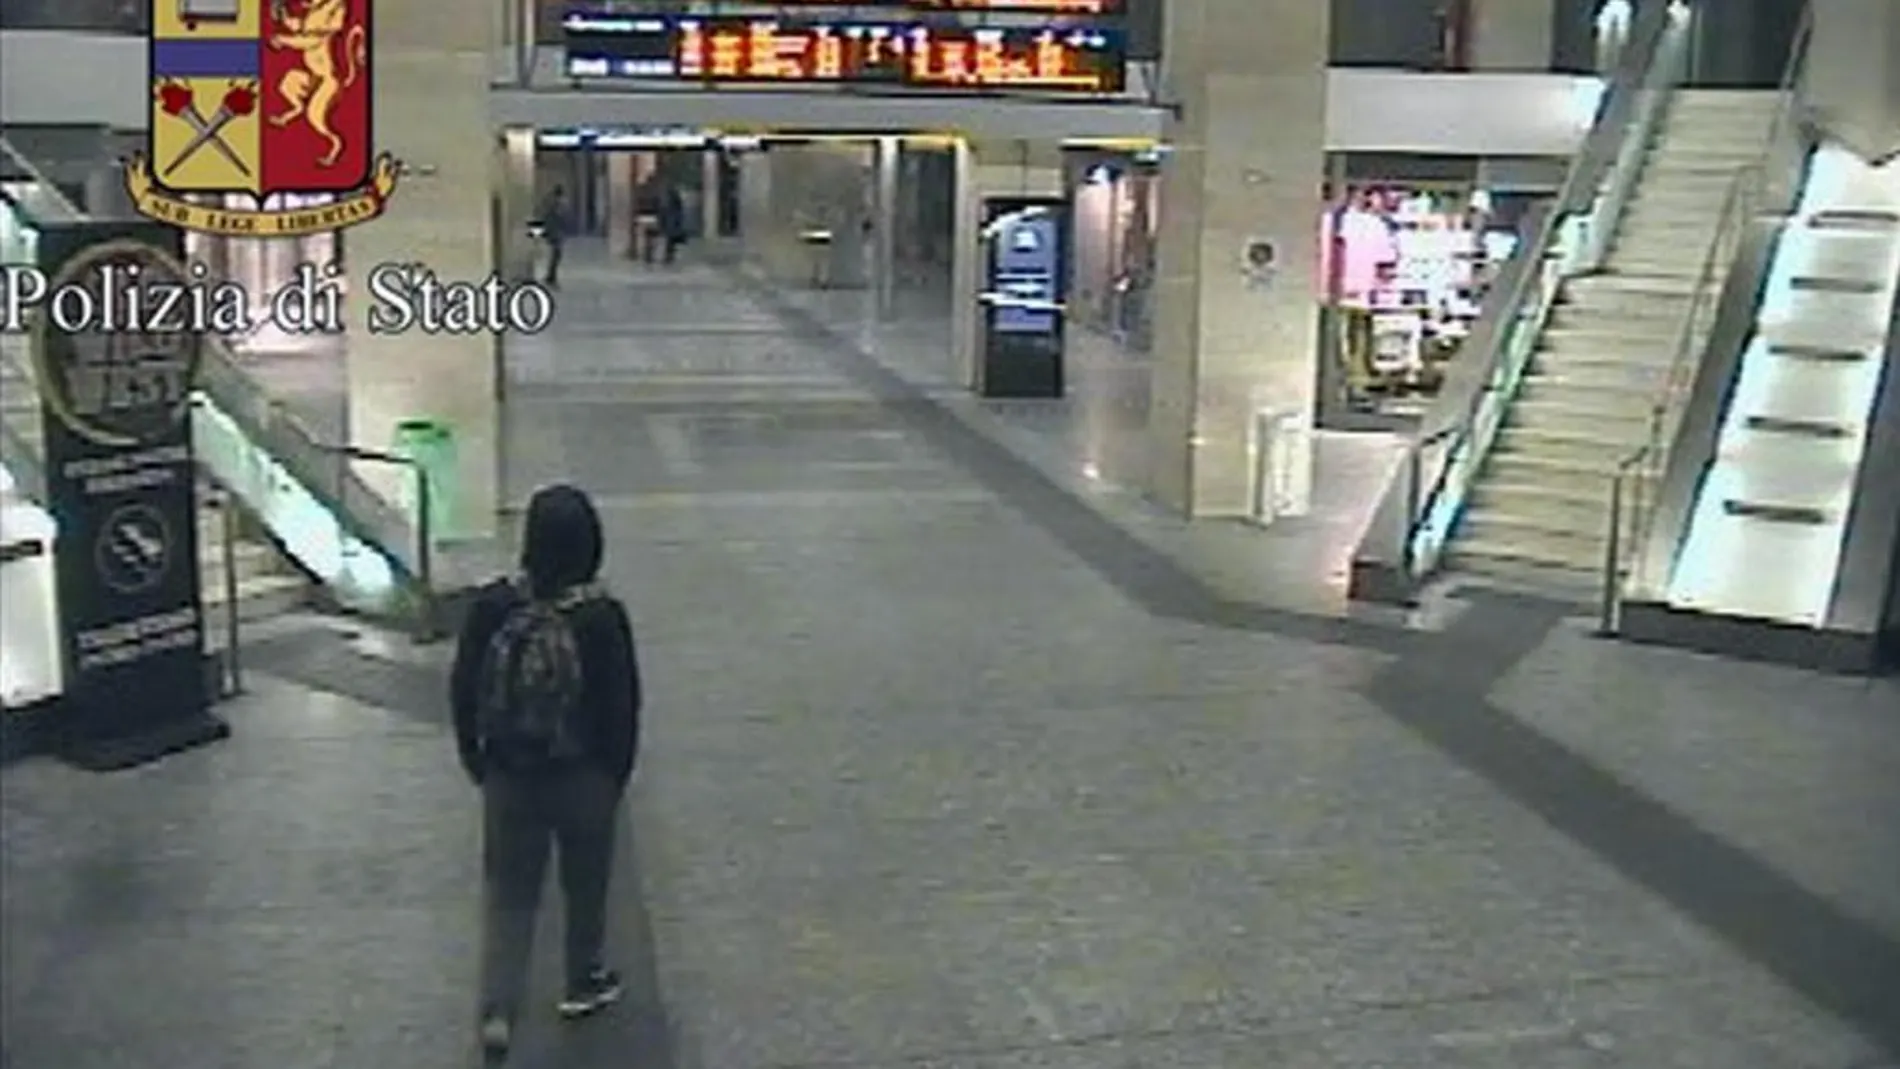 Captura de video facilitada por la policía italiana que muestra a Anis Amri, el tunecino sospechoso de cometer el atentado de Berlín, en la estación central de tren de Turín (Italia) el pasado 23 de diciembre de 2016